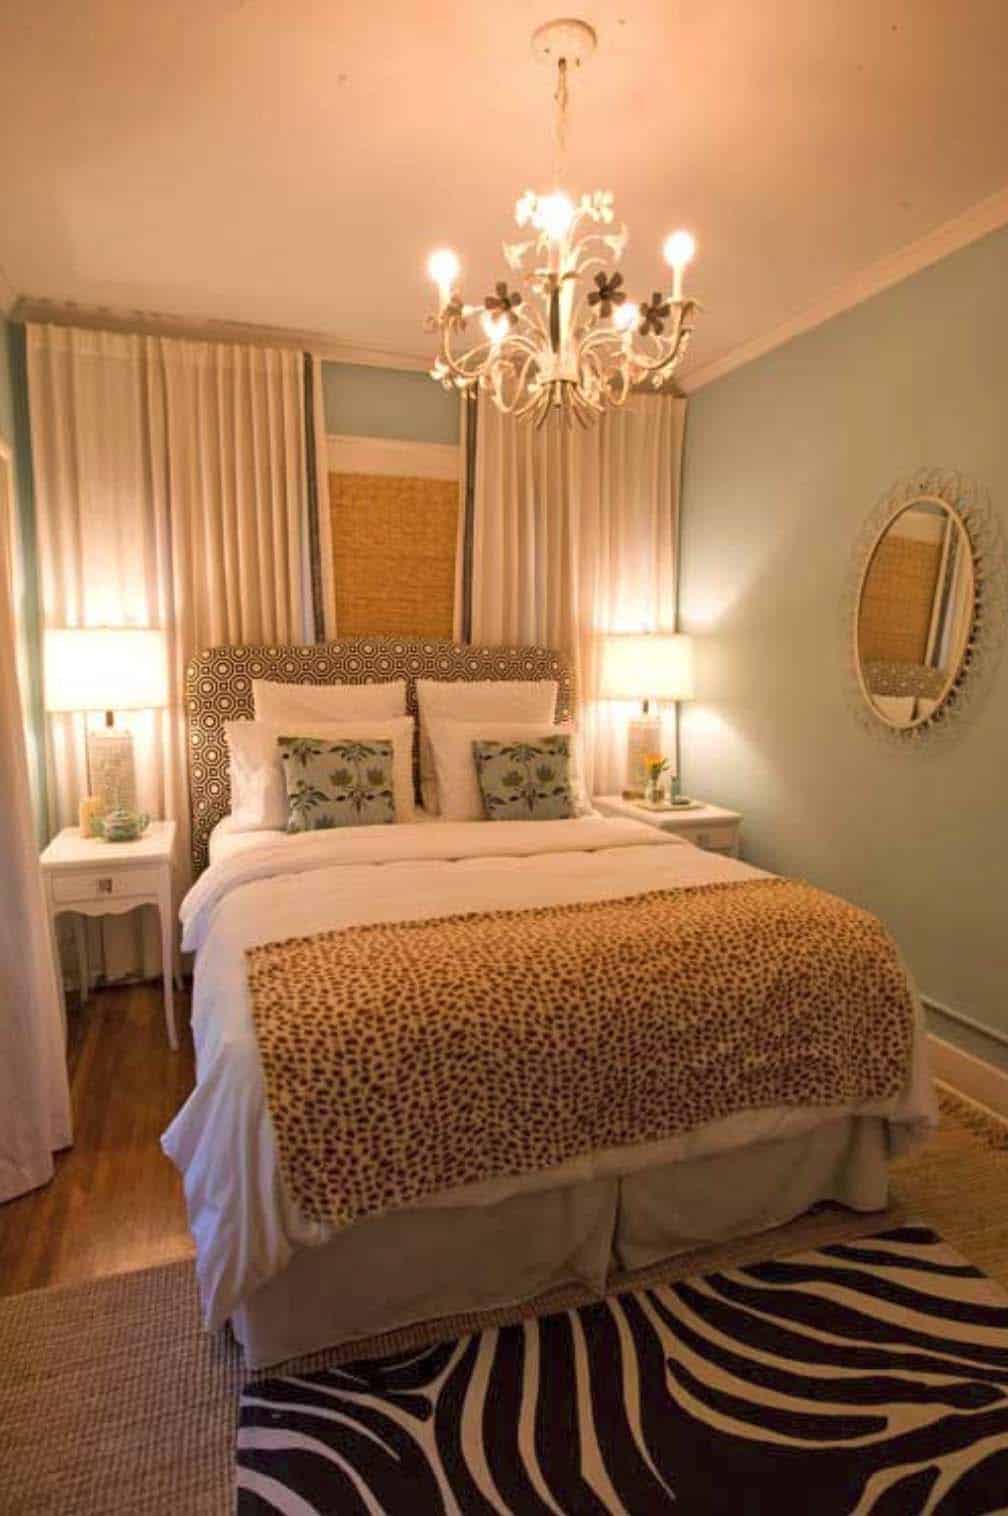 30 Small Yet Amazingly Cozy Master Bedroom Retreats